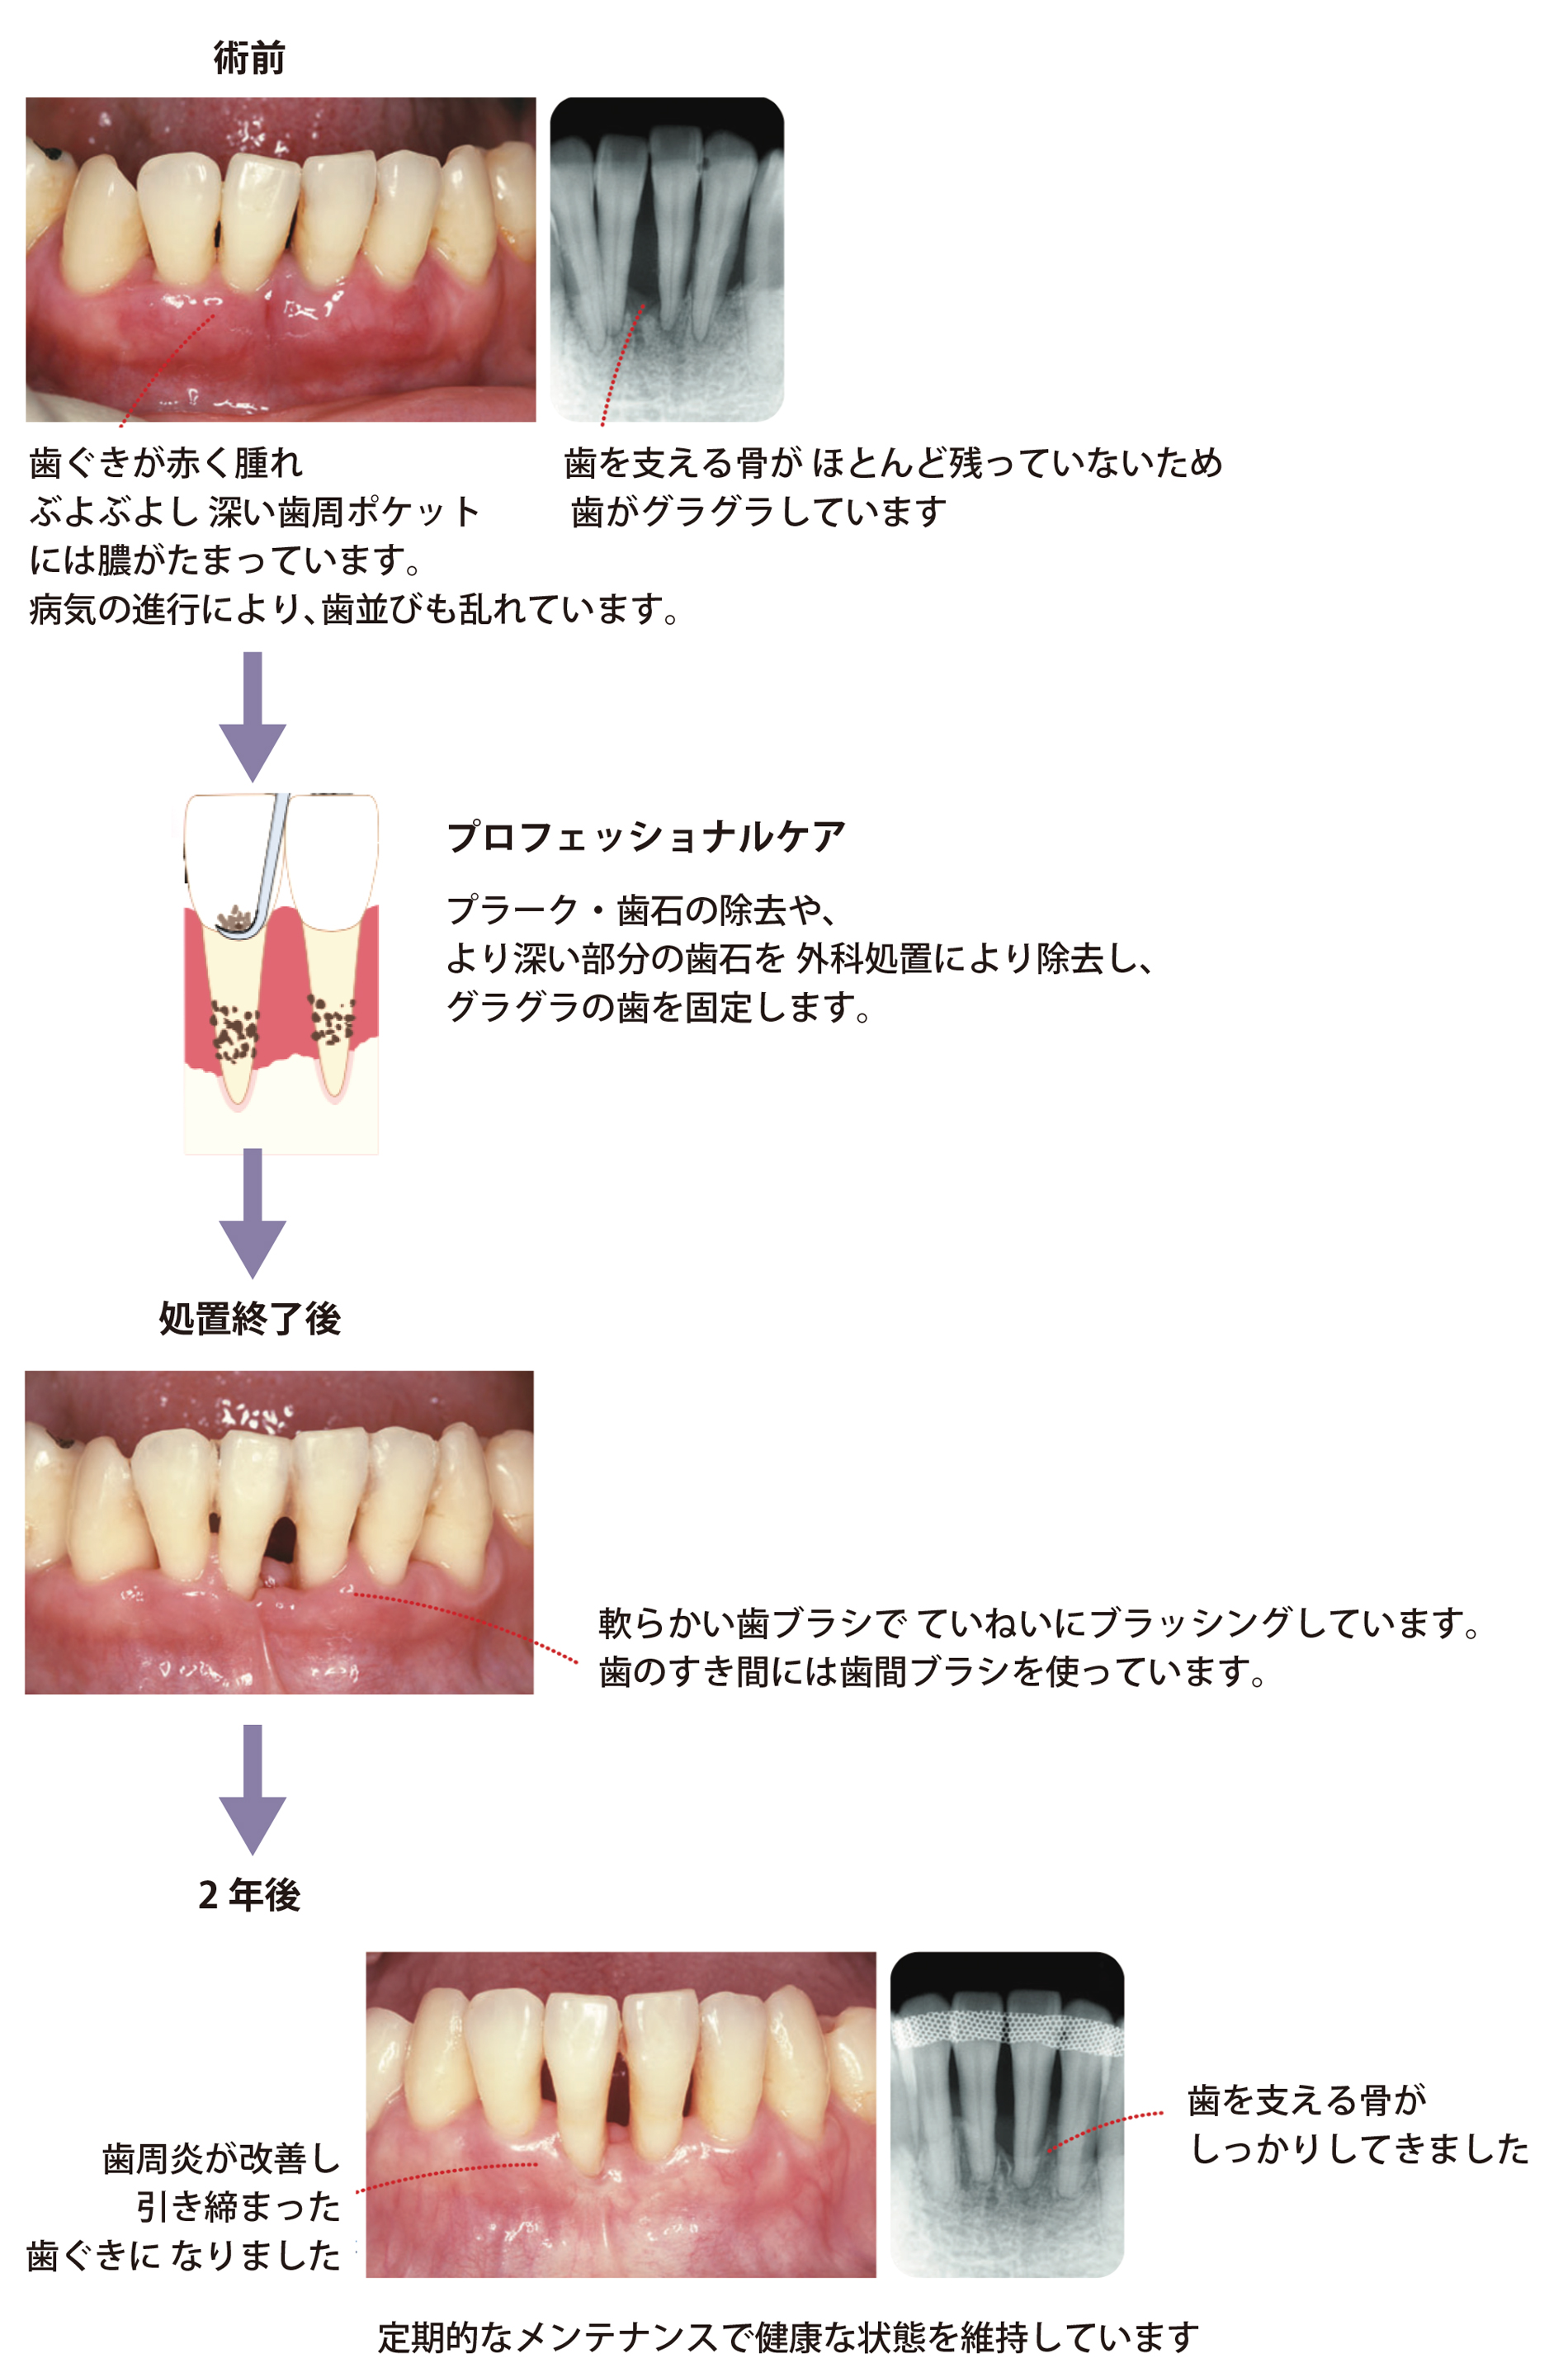 歯ぐきが赤く腫れ、ぶよぶよし、深井歯周ポケットには膿が溜まっています。病気の進行により、歯並びも乱れています。歯を支える骨がほとんど残っていないため、歯がぐらぐらしています。そこで、プロフェッショナルケアにより、より深い部分の歯石を外科処置により除去し、グラグラの歯を固定ます。処置終了後にはやわらかい歯ブラシでていねいにブラッシングしています。歯の隙間には歯間ブラシを使っています。歯周炎が改善し、引き締まった歯ぐきになり、歯を支える骨がしっかりしてきます。定期的なメンテナンスで健康な状態を維持しています。